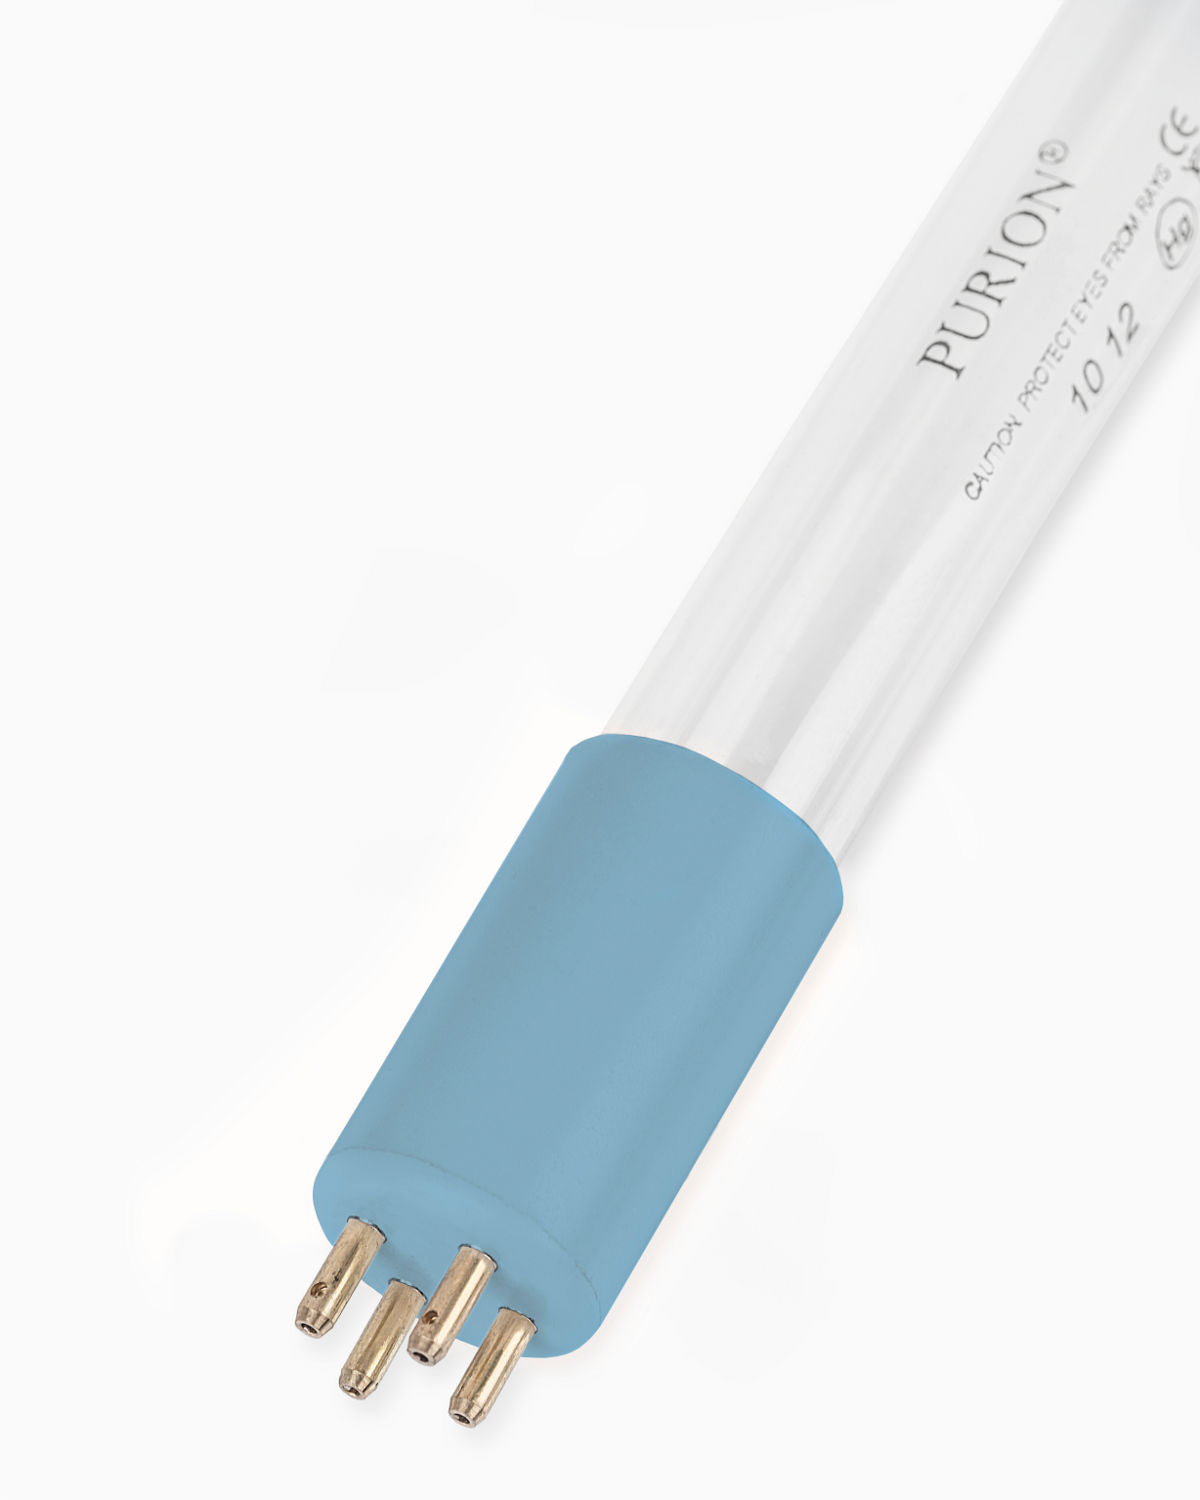 Eine blaue PURION IBC DN150 36W OTC SPL BS-Röhre auf weißem Hintergrund beleuchtet Wasserentnahme und Trinkwasserqualität. [Markenname: UV Concept GmbH]